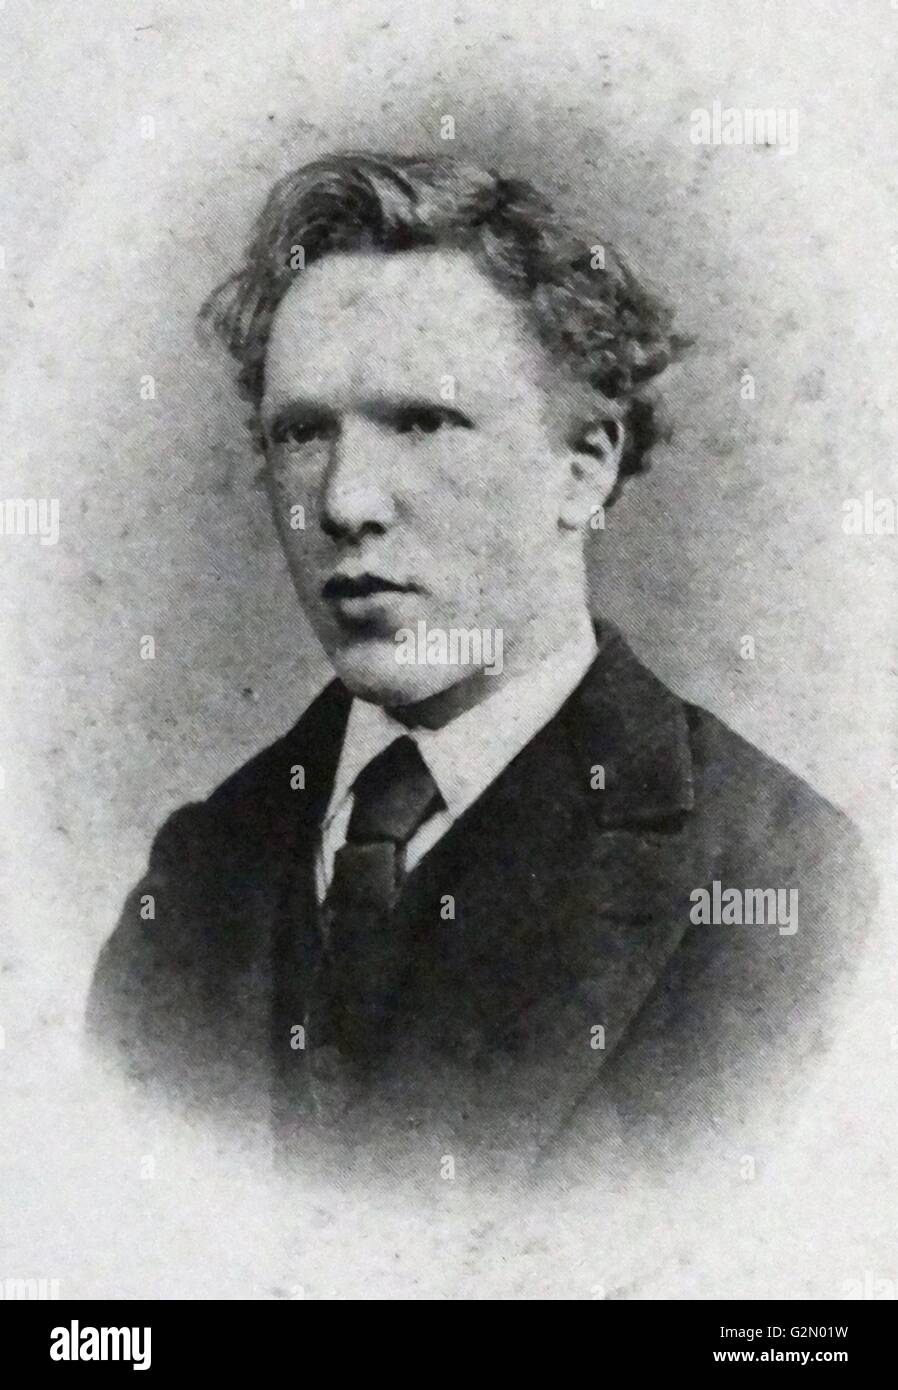 Kopf und Schultern Porträt des berühmten holländischen Malers Vincent Van Gogh (30. März 1853 - 29. Juli 1890), Foto 1871 genommen. Stockfoto